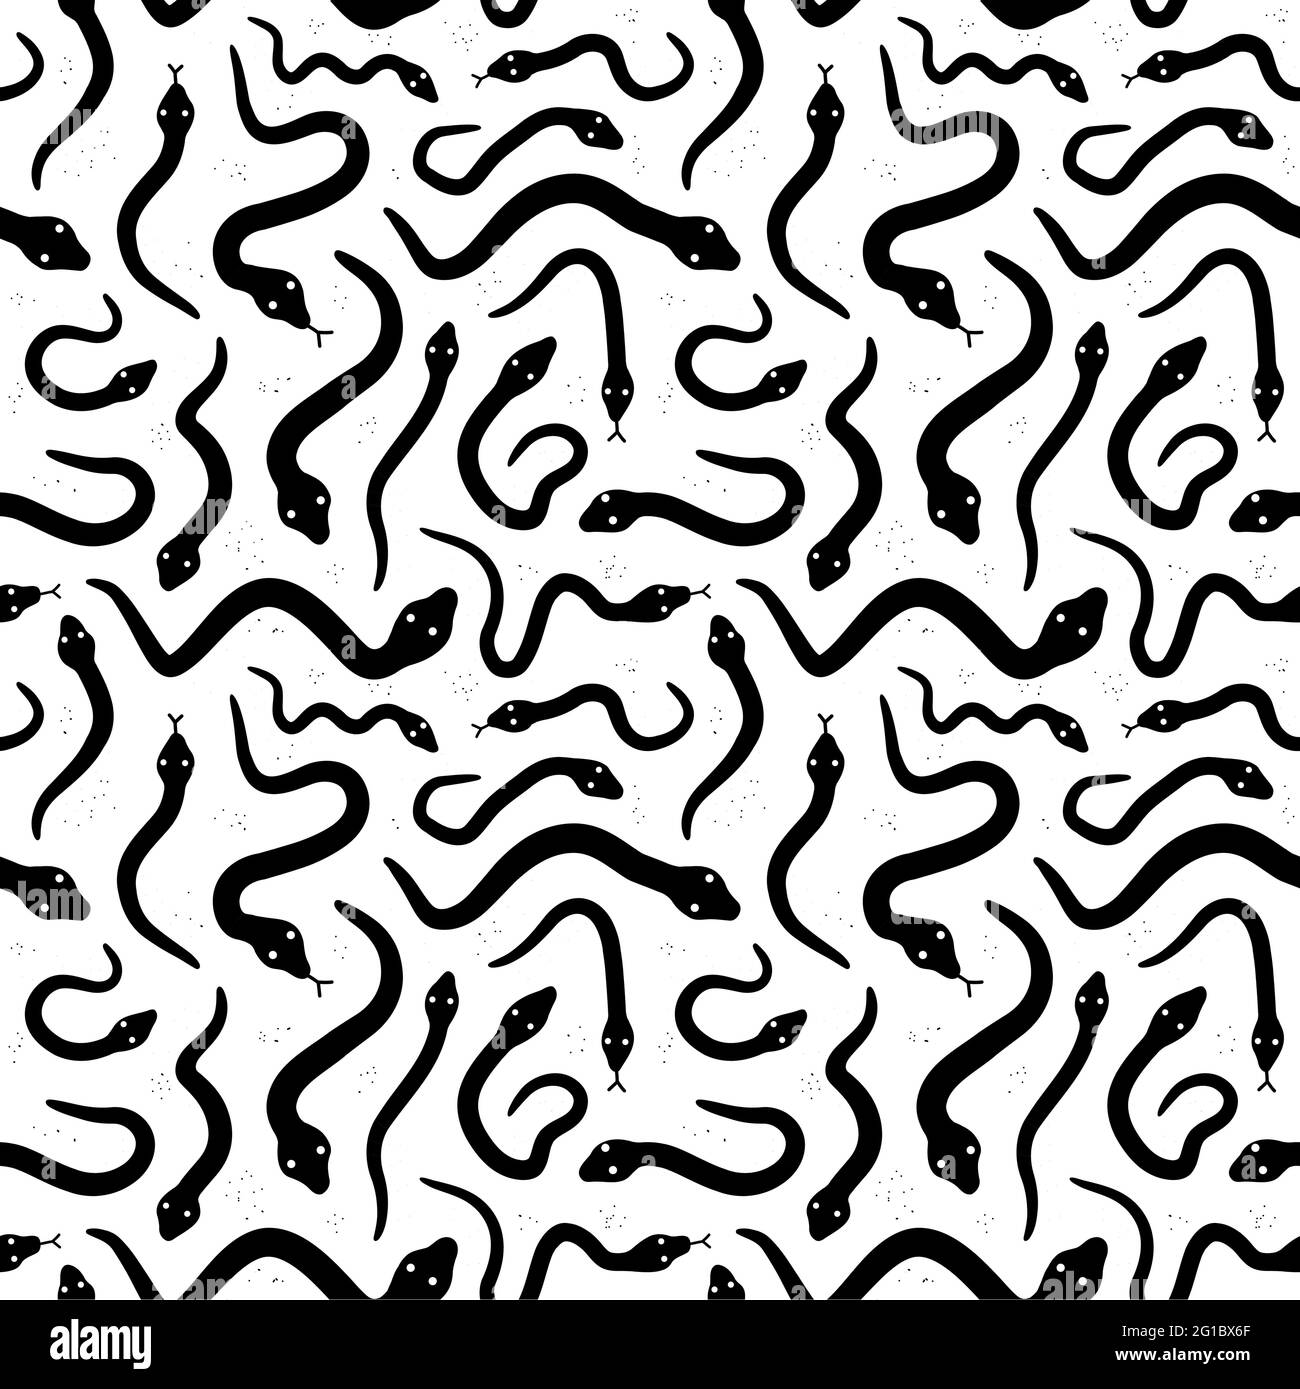 Serpents blancs sur fond noir motif sans couture. Icône d'illustration du style de grunge vectorisé à la main. Différents motifs sans coutures Illustration de Vecteur